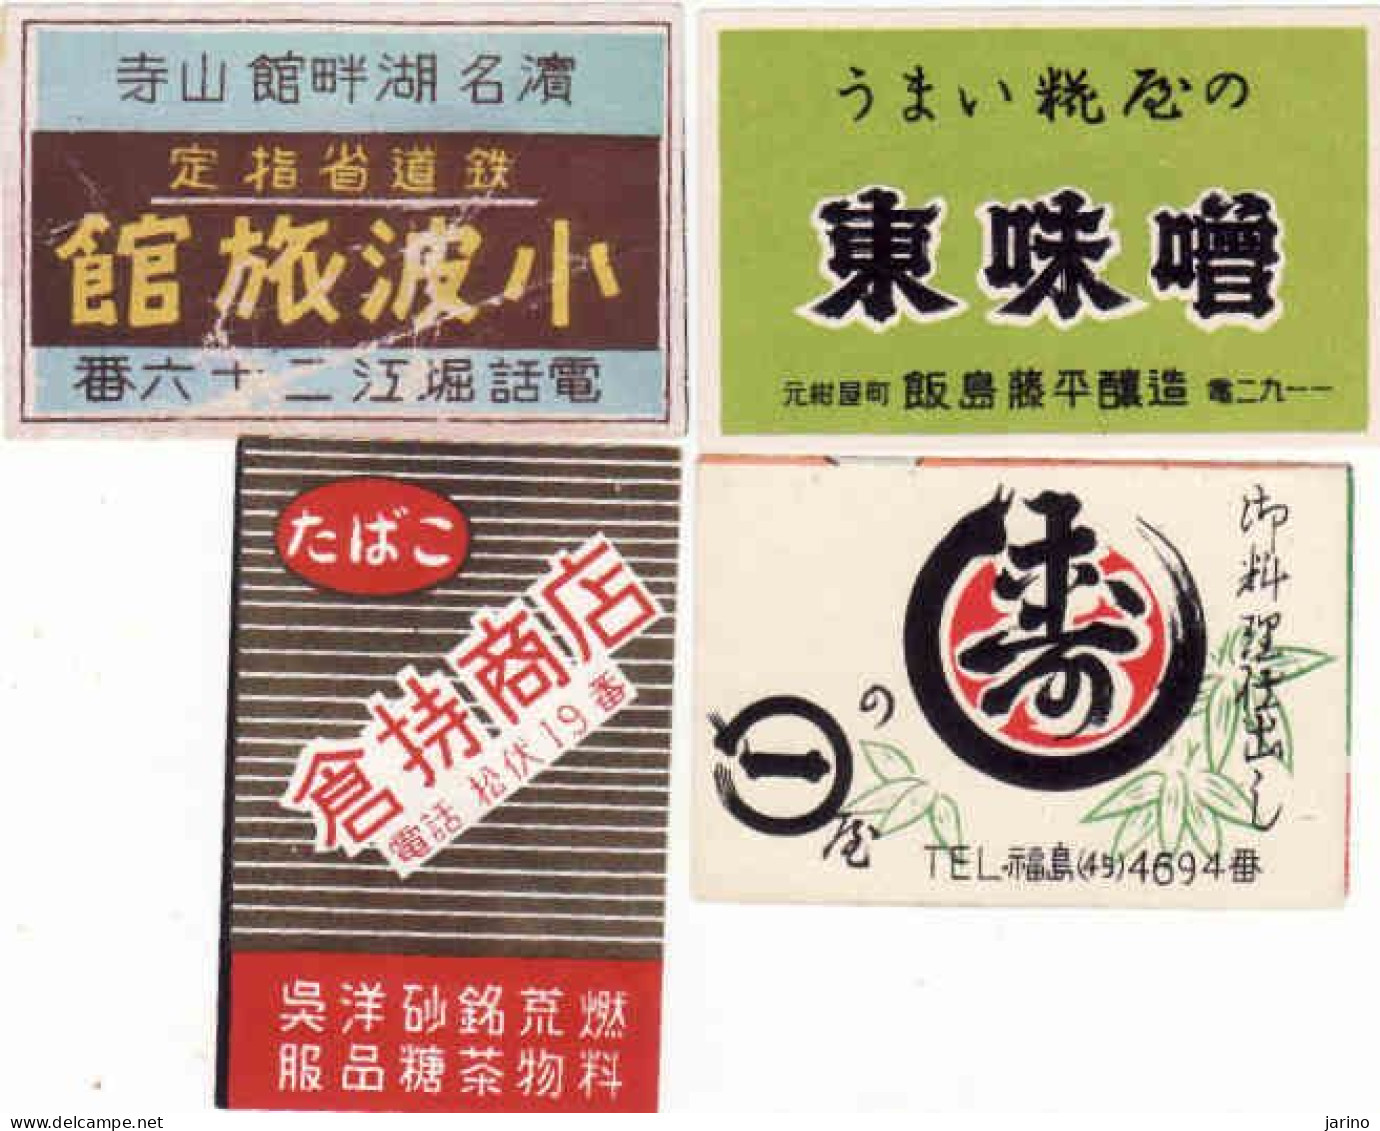 Japan - 4 Matchbox Labels, - Matchbox Labels